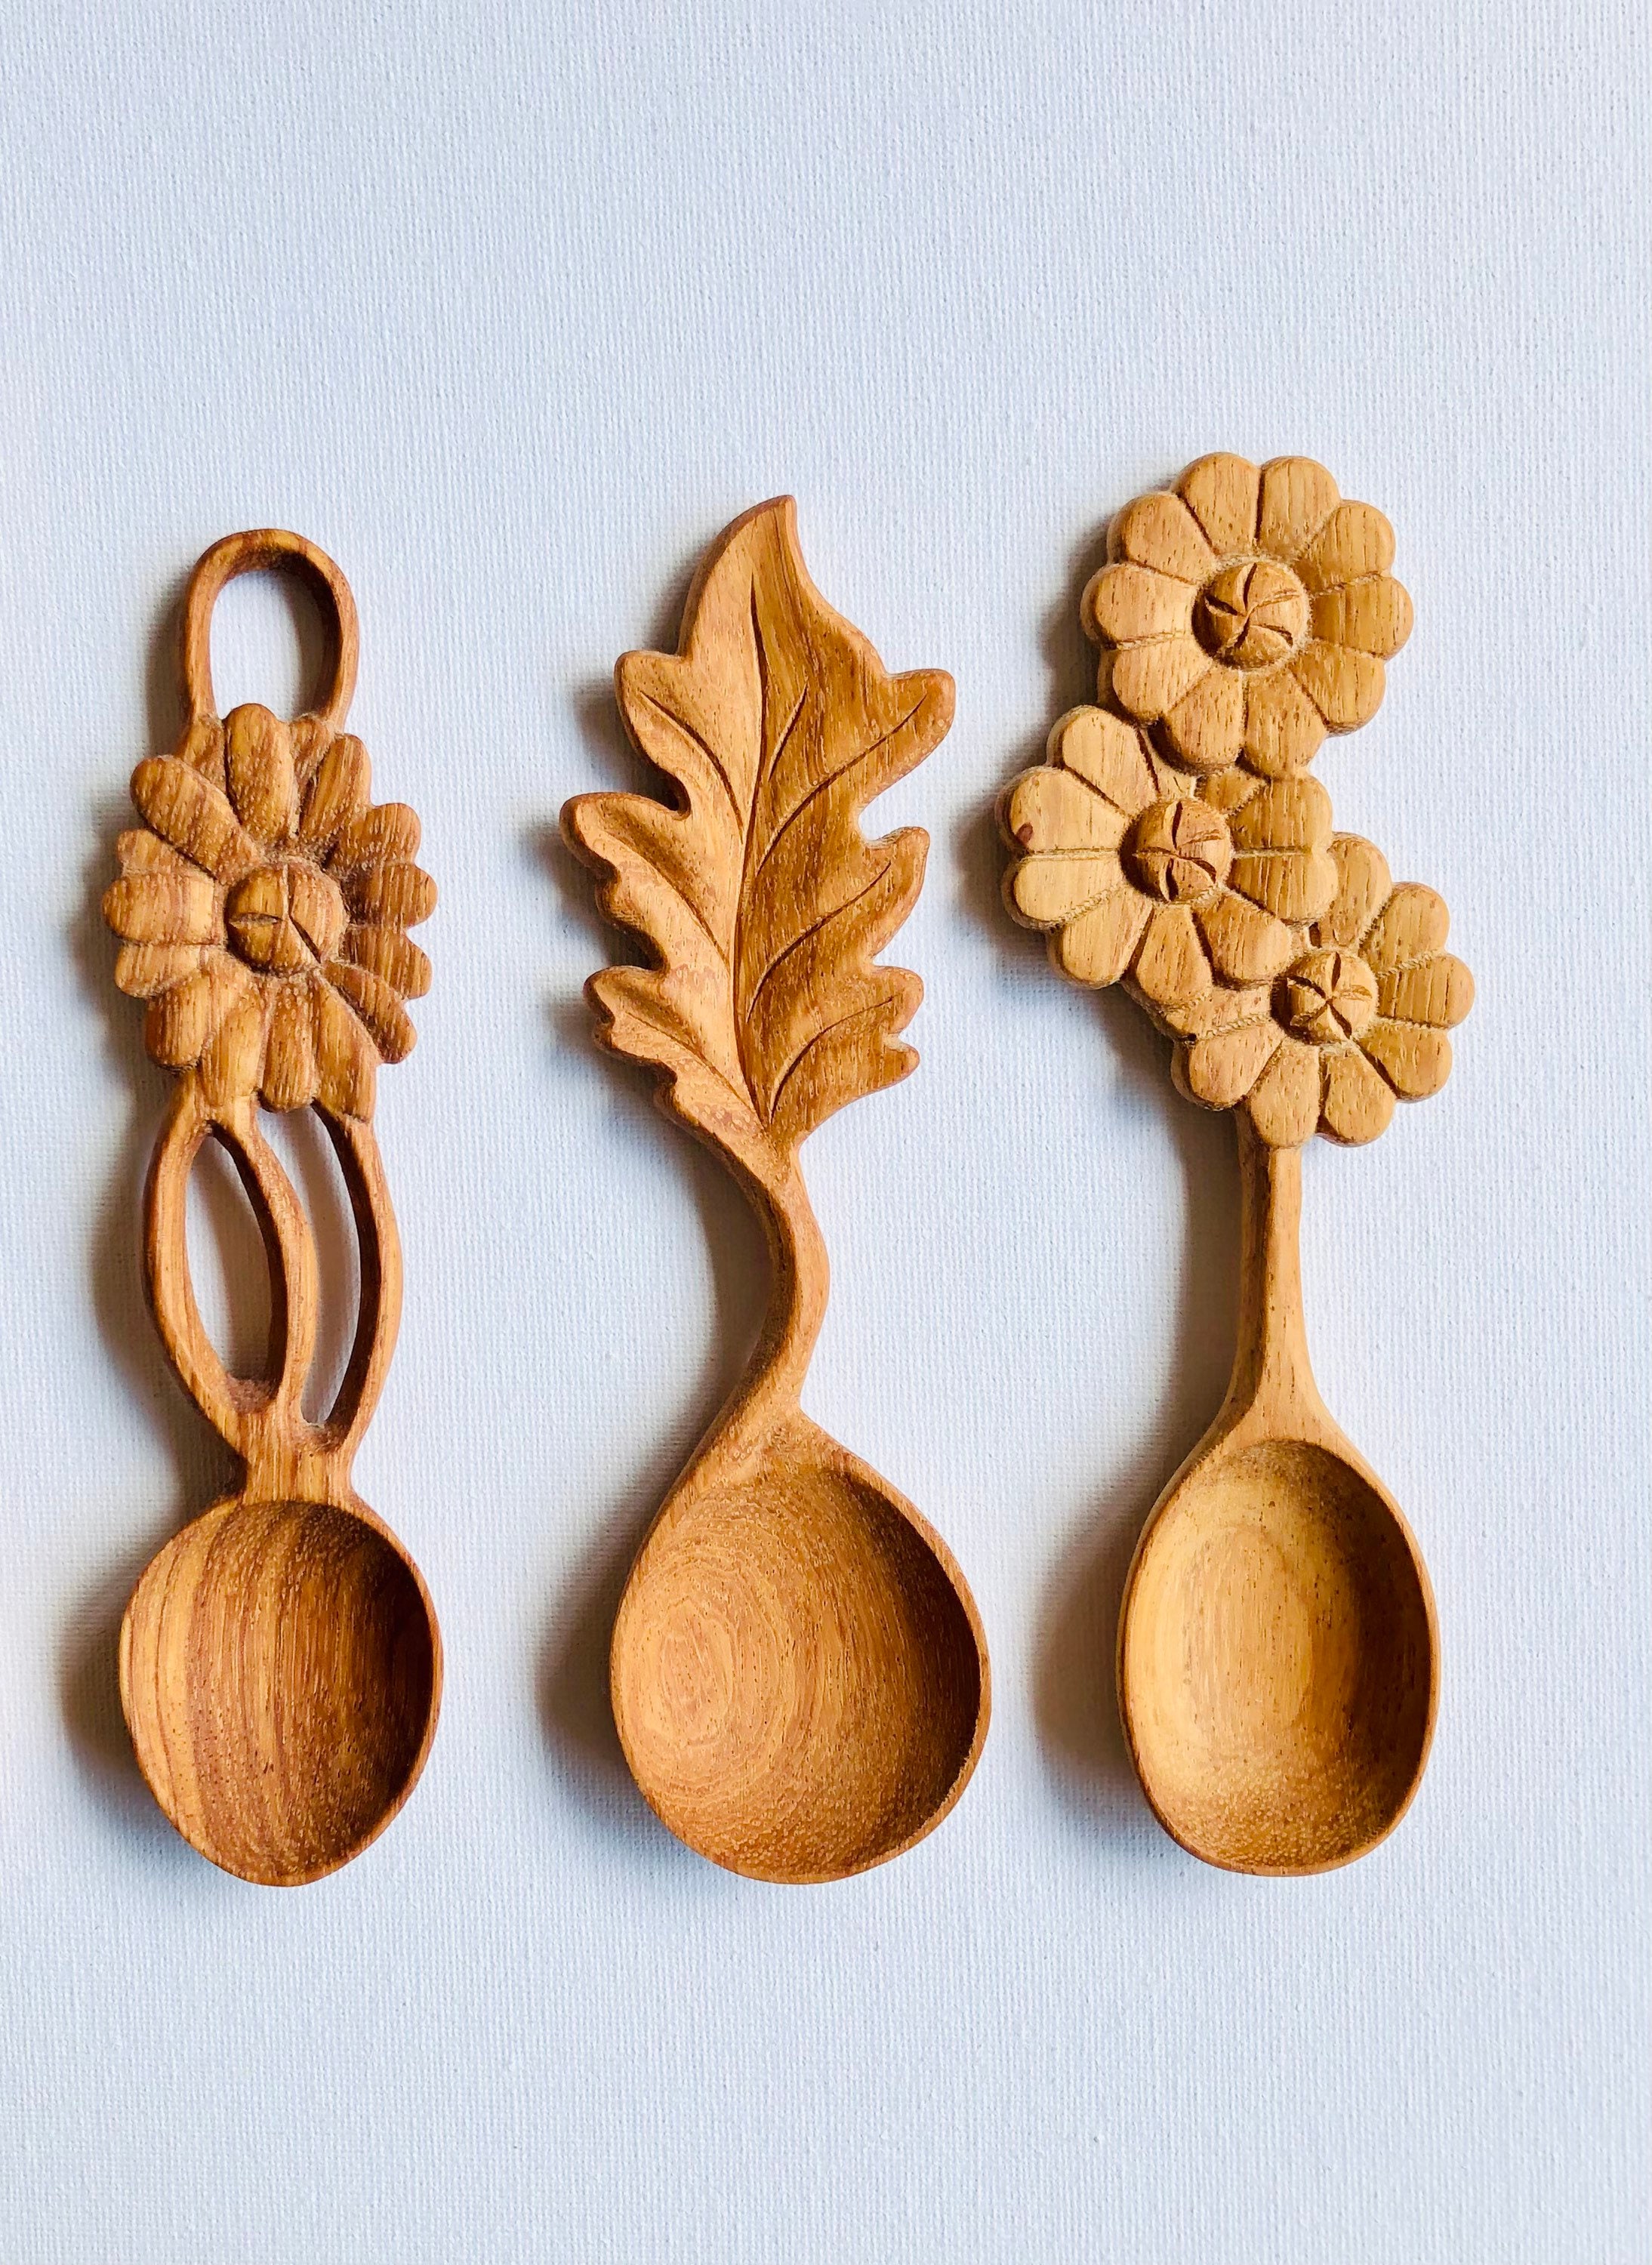 Handmade Wooden Spoons – Kline Wood Design